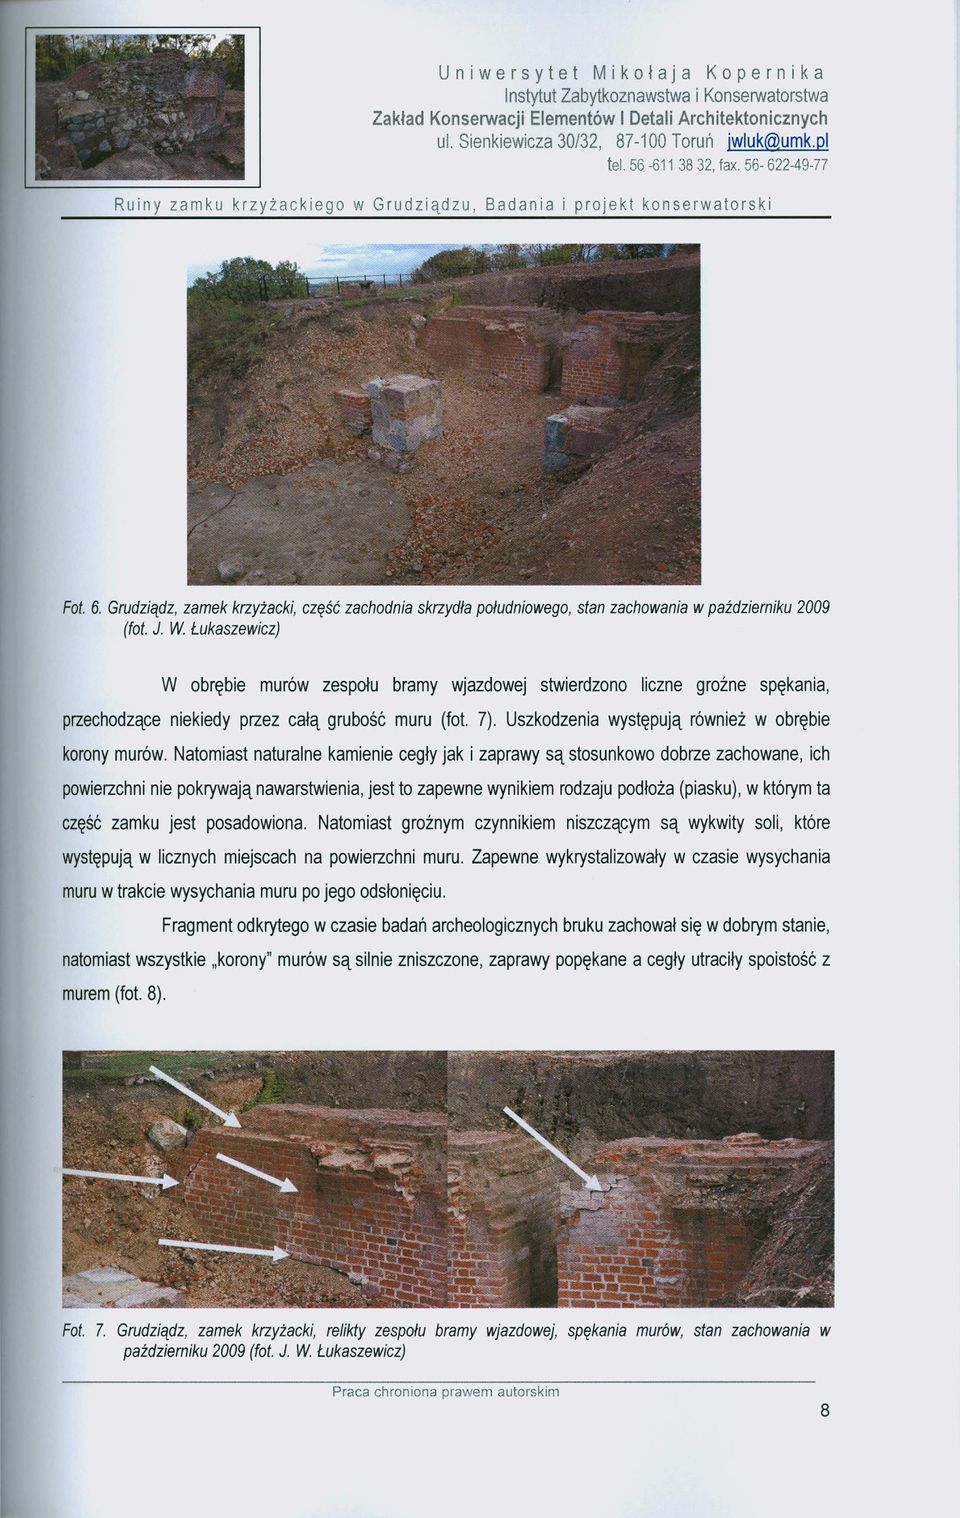 Łukaszewicz) W obrębie murów zespołu bramy wjazdowej stwierdzono liczne grożne spękania, przechodzące niekiedy przez całą grubość muru (fot. 7). Uszkodzenia występują również w obrębie korony murów.